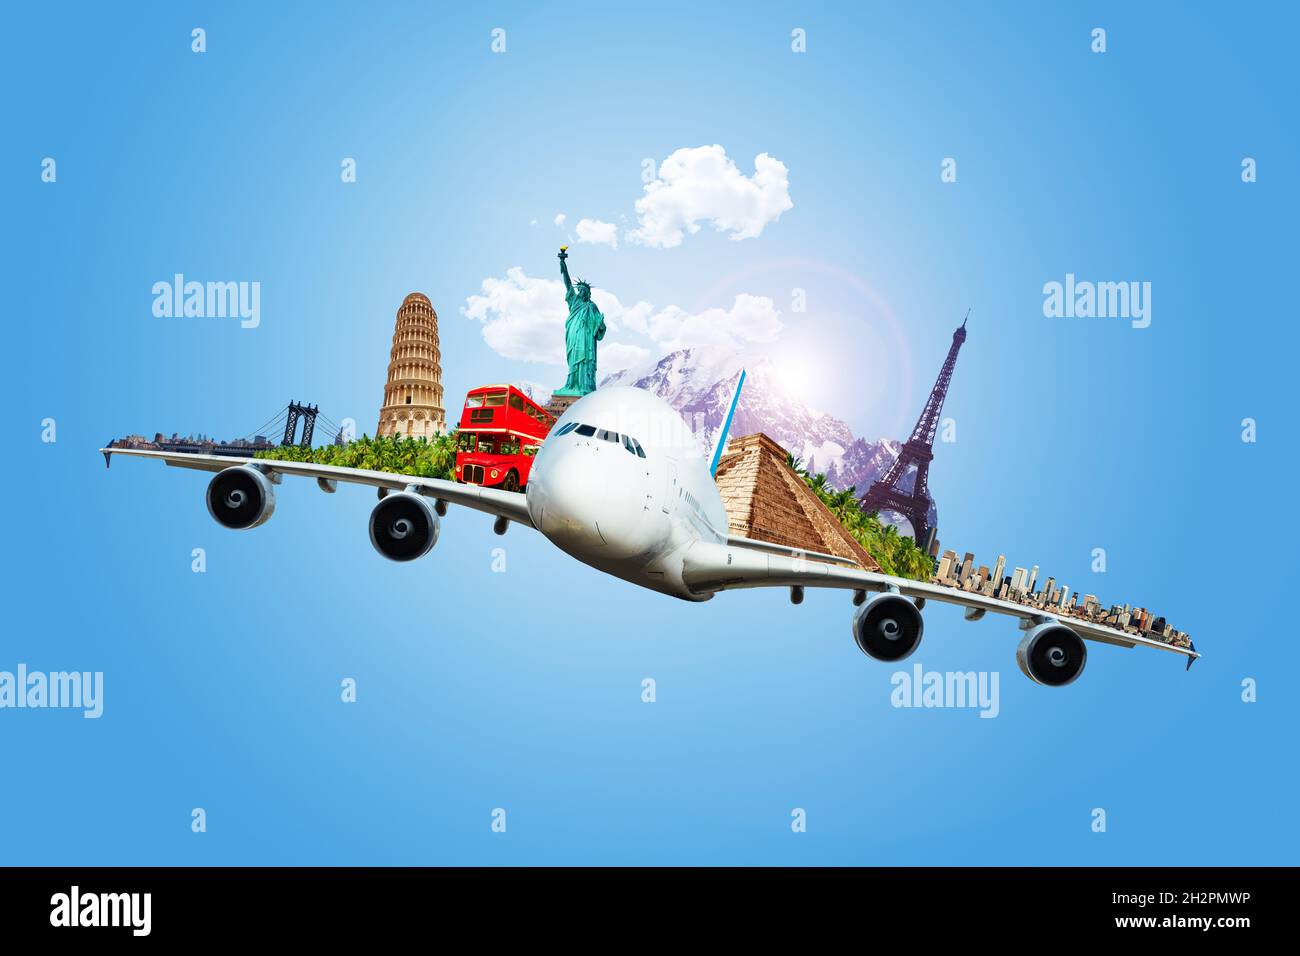 El concepto de viaje de un avión grande lleva recuerdos Foto de stock